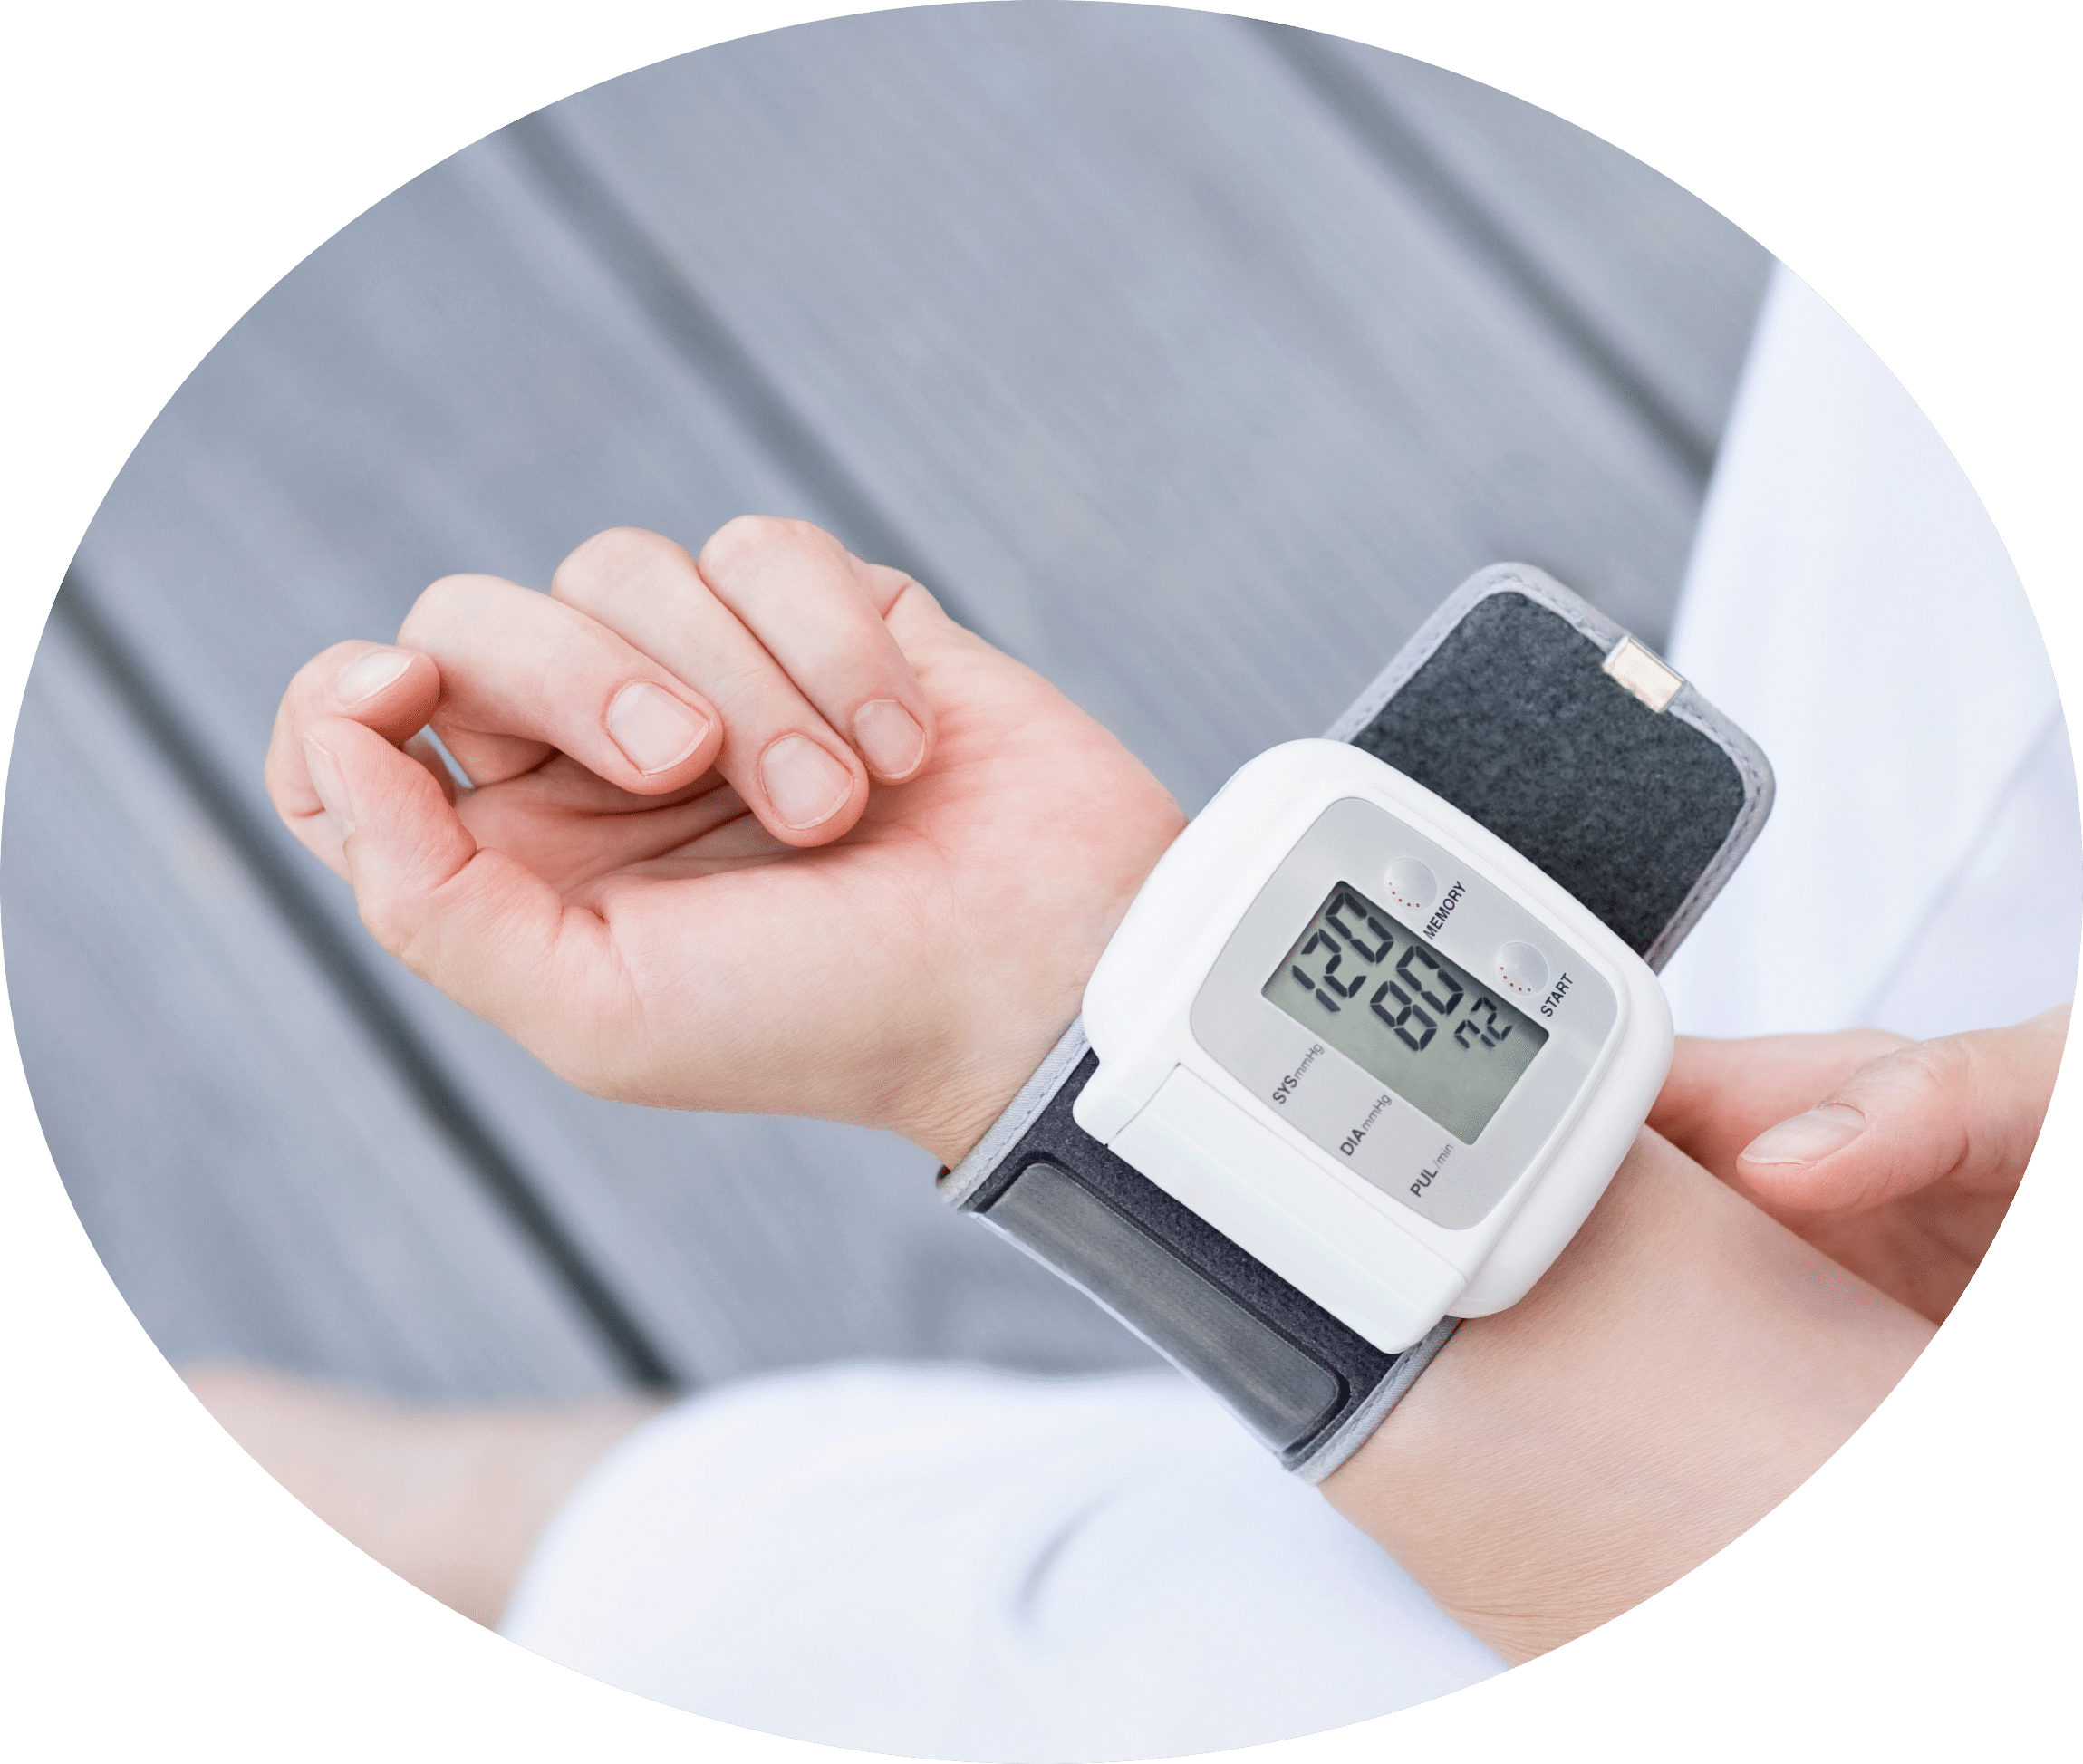 tensiomètre automatique mesurant la pression artérielle au poignet